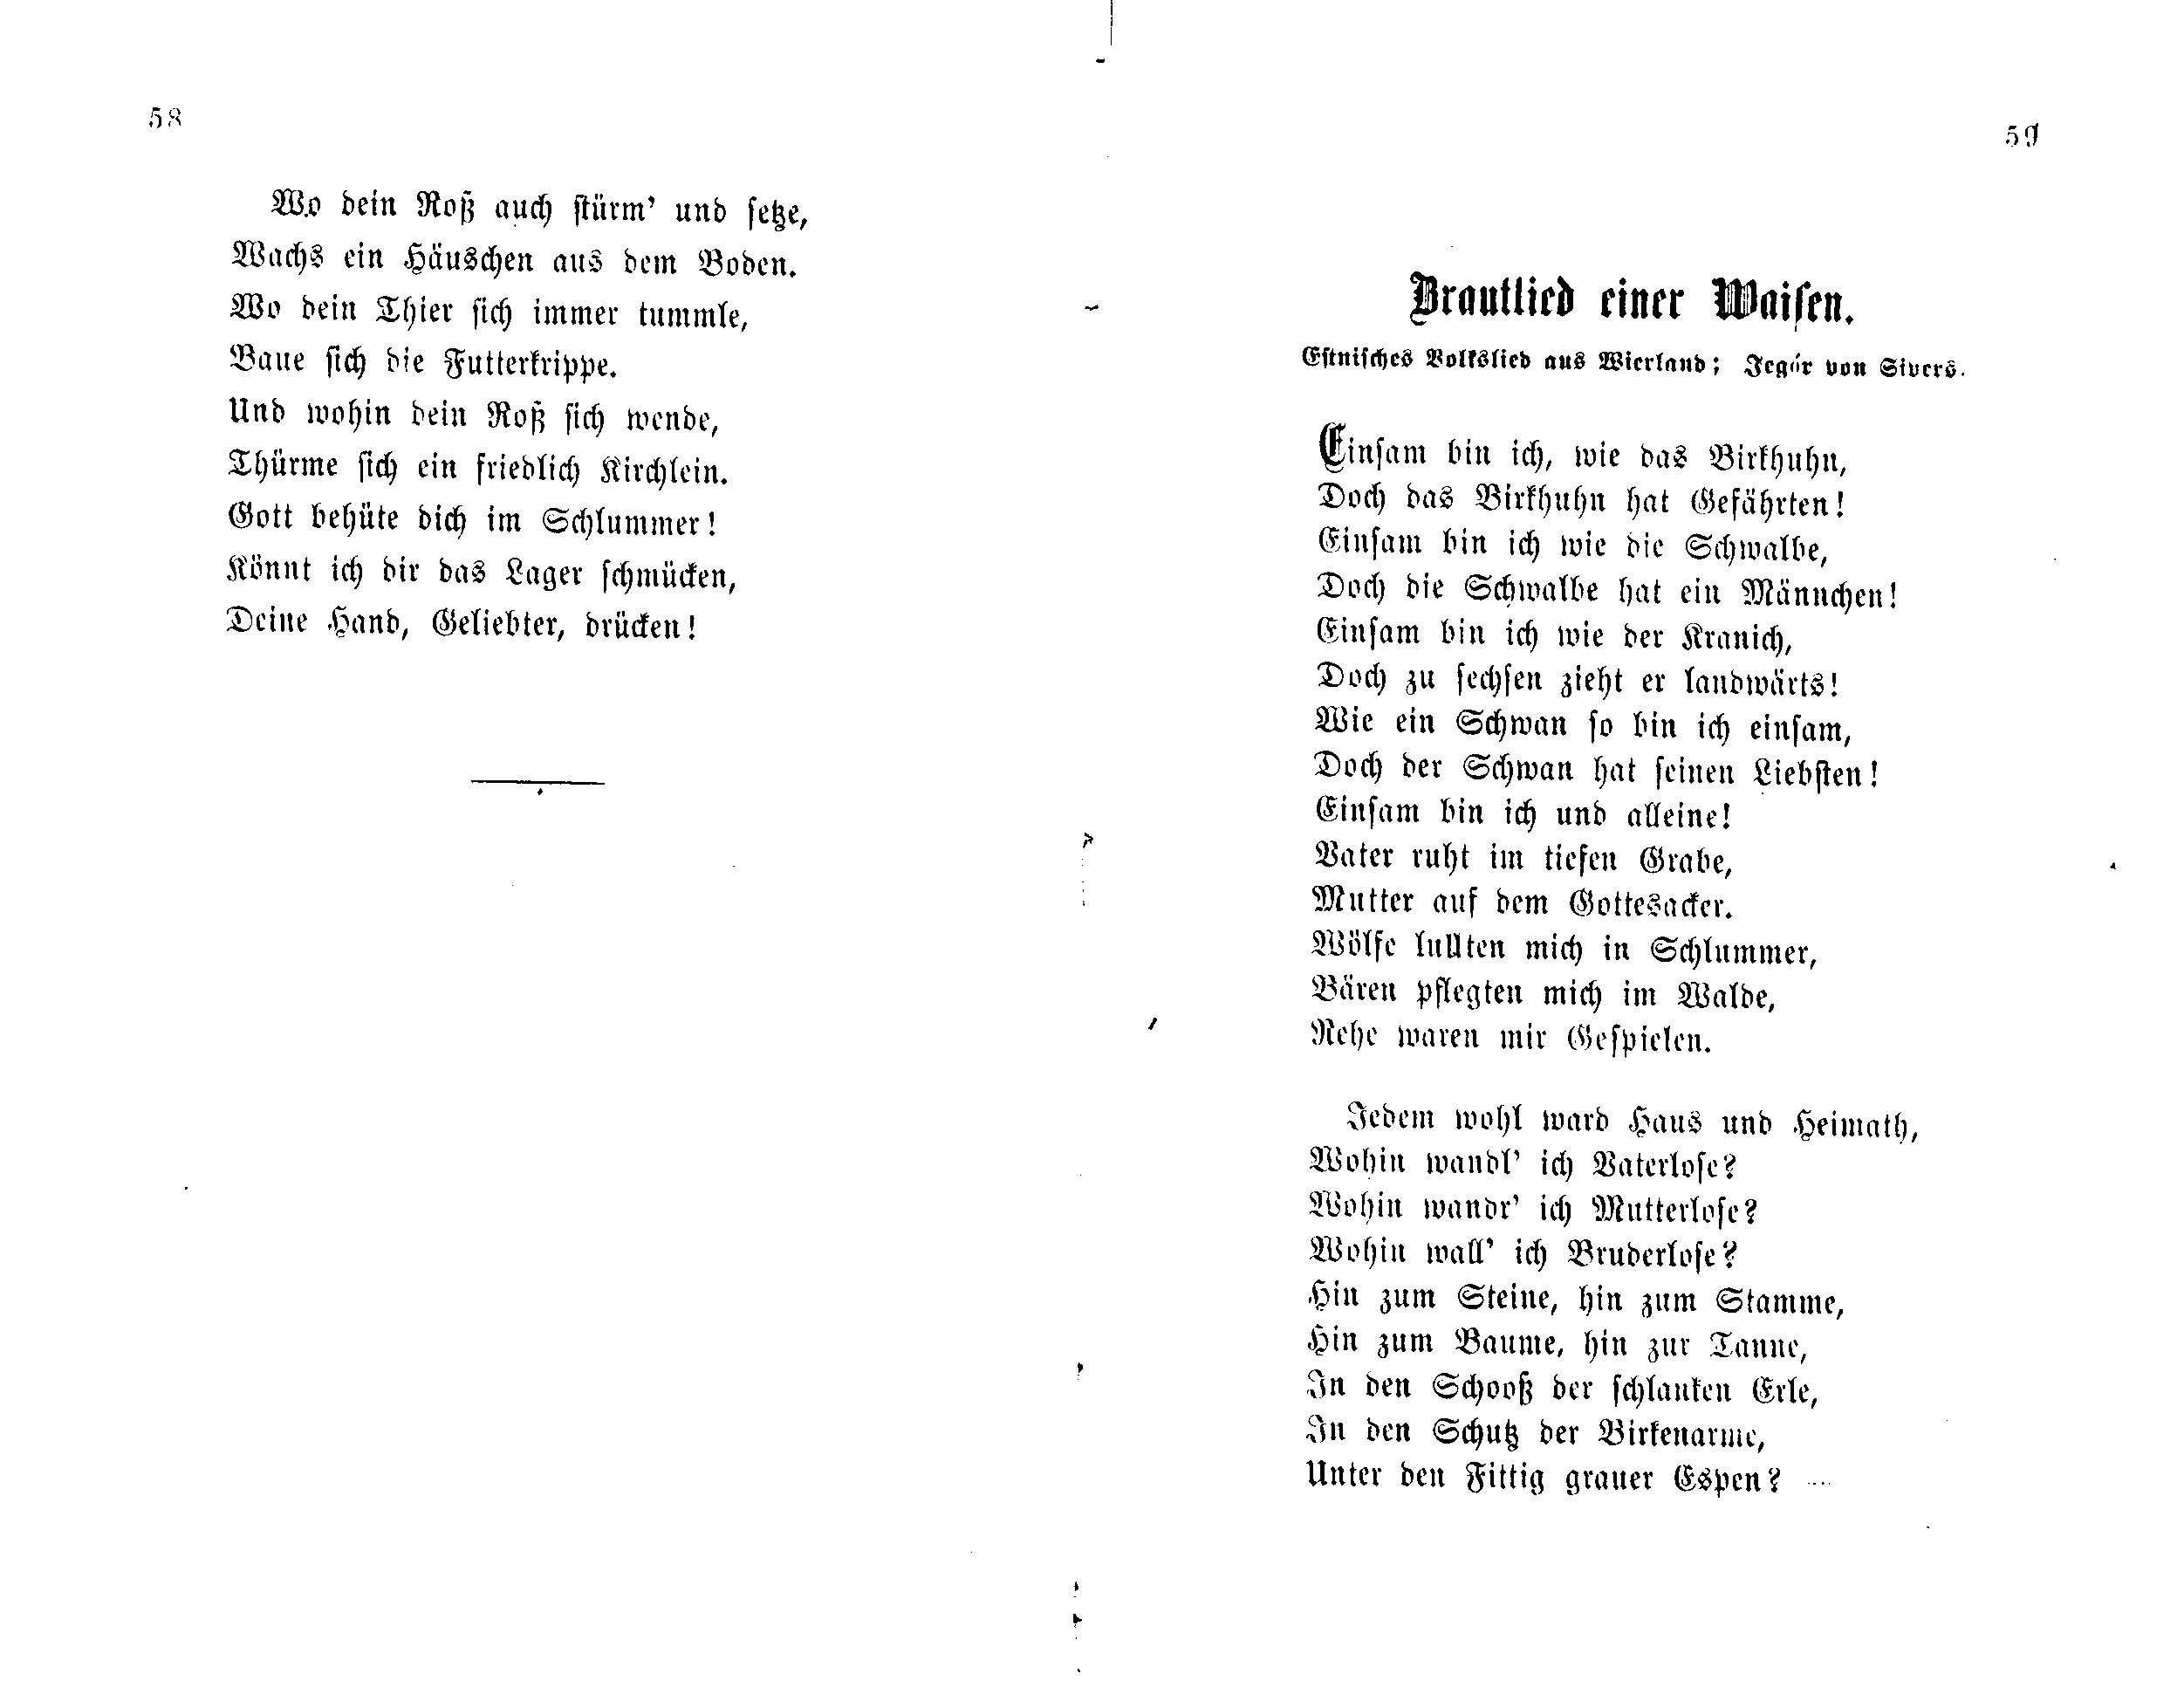 Brautlied einer Waisen (1877) | 1. (58-59) Main body of text